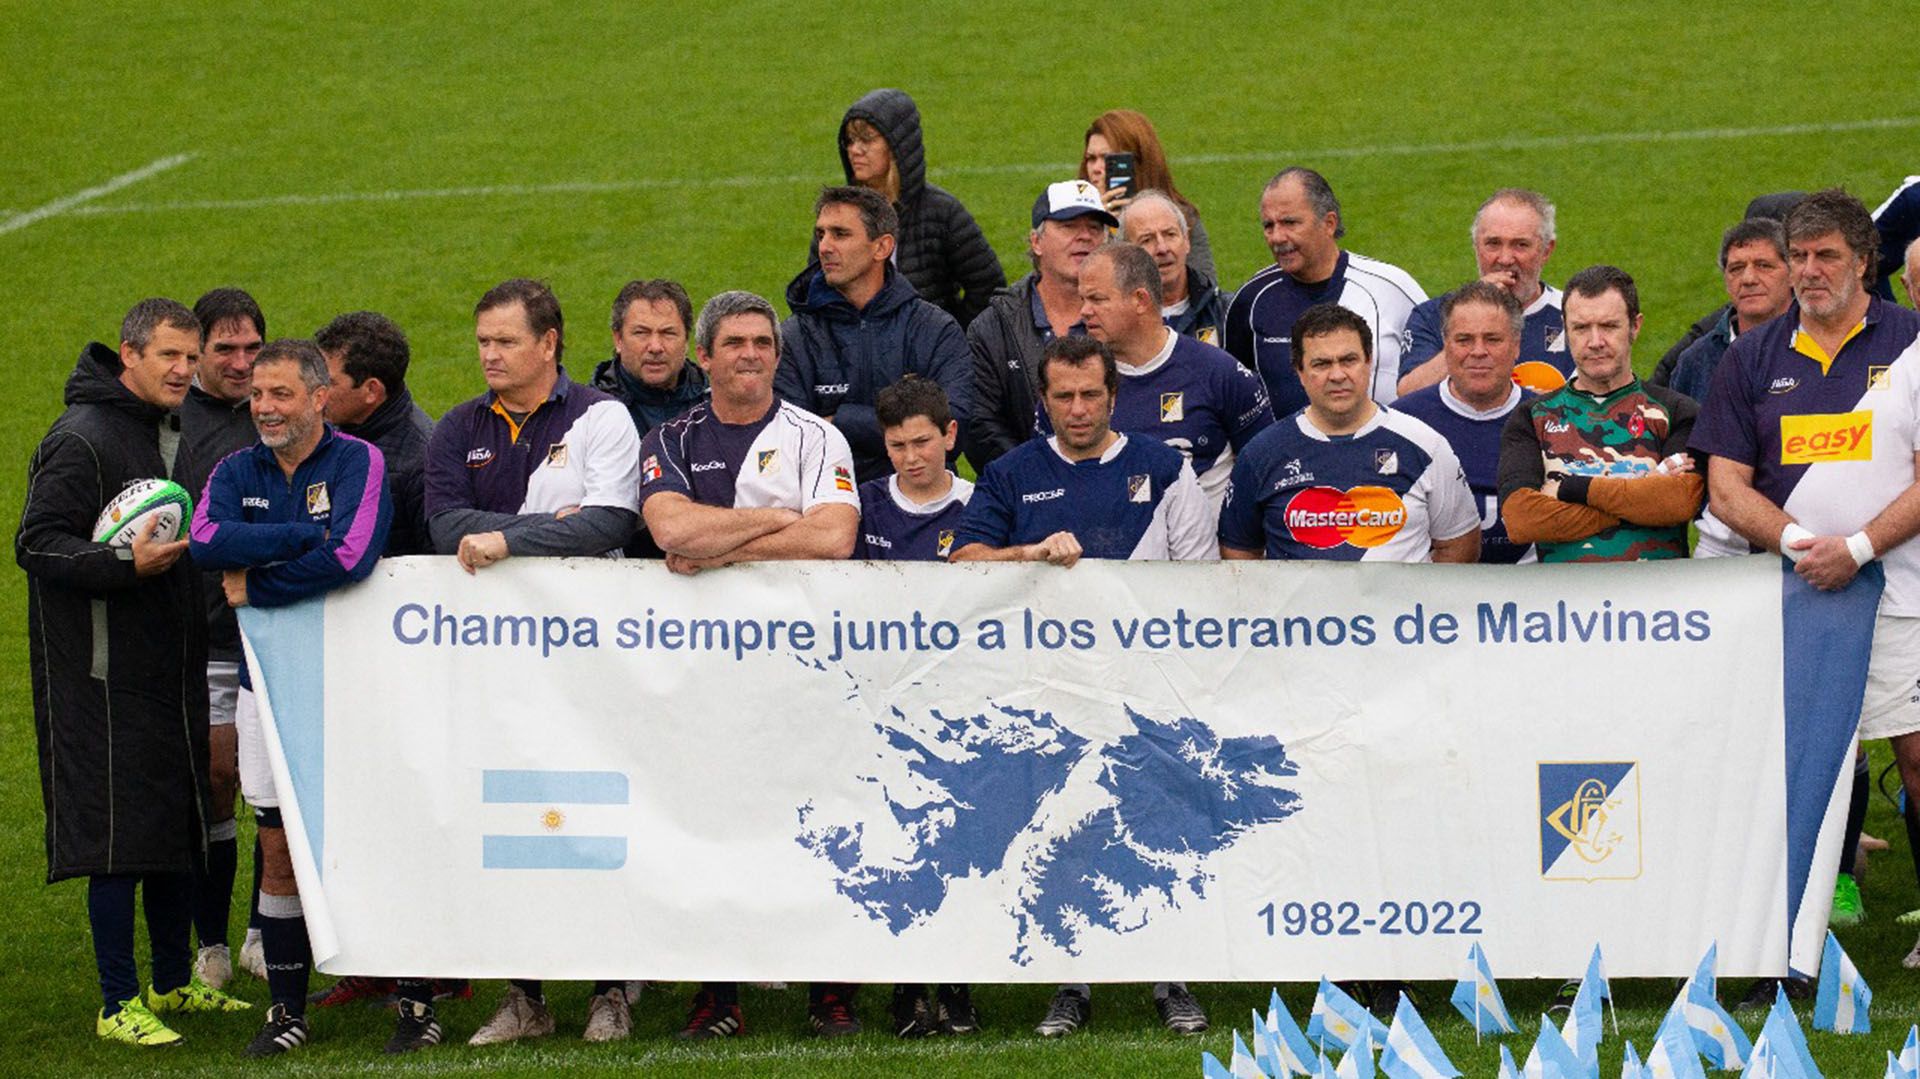 "Champa siempre junto a los veteranos de Malvinas", decía la bandera que exhibieron los jugadores del club de Pilar